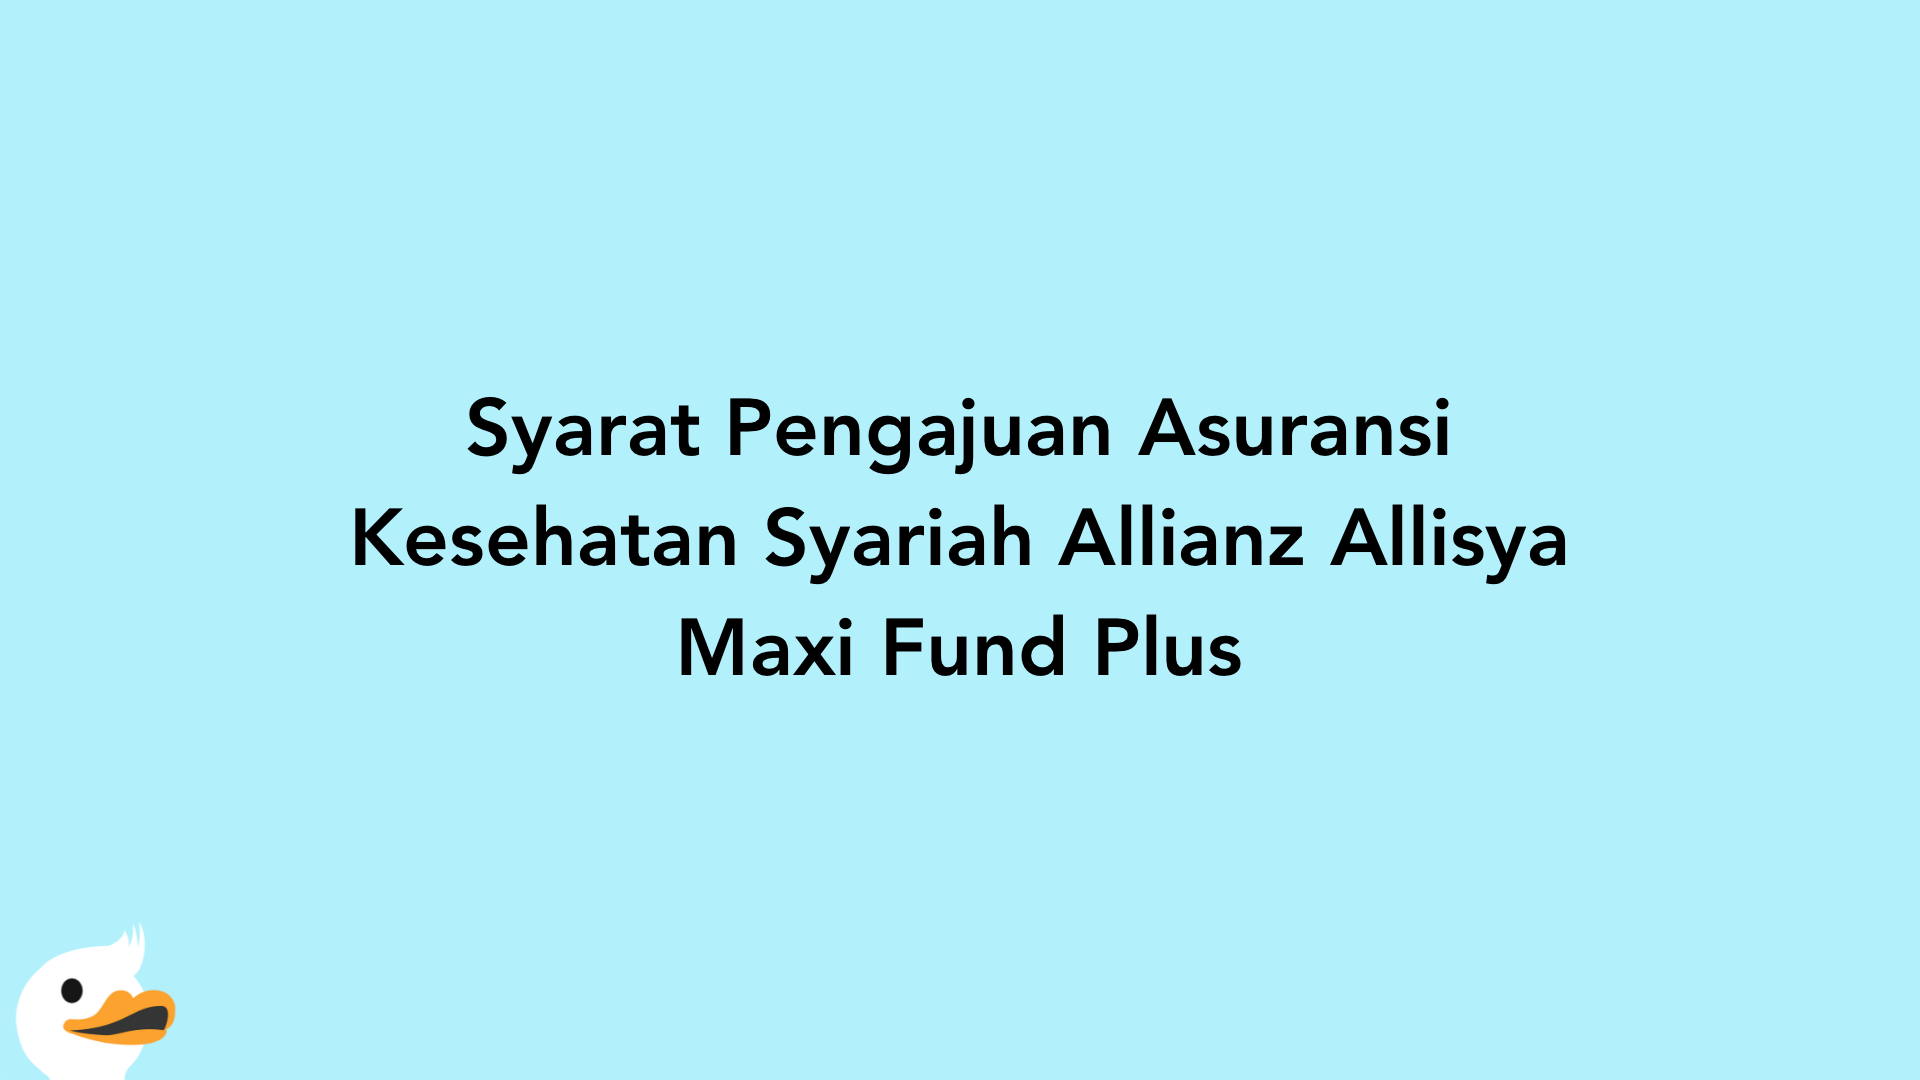 Syarat Pengajuan Asuransi Kesehatan Syariah Allianz Allisya Maxi Fund Plus